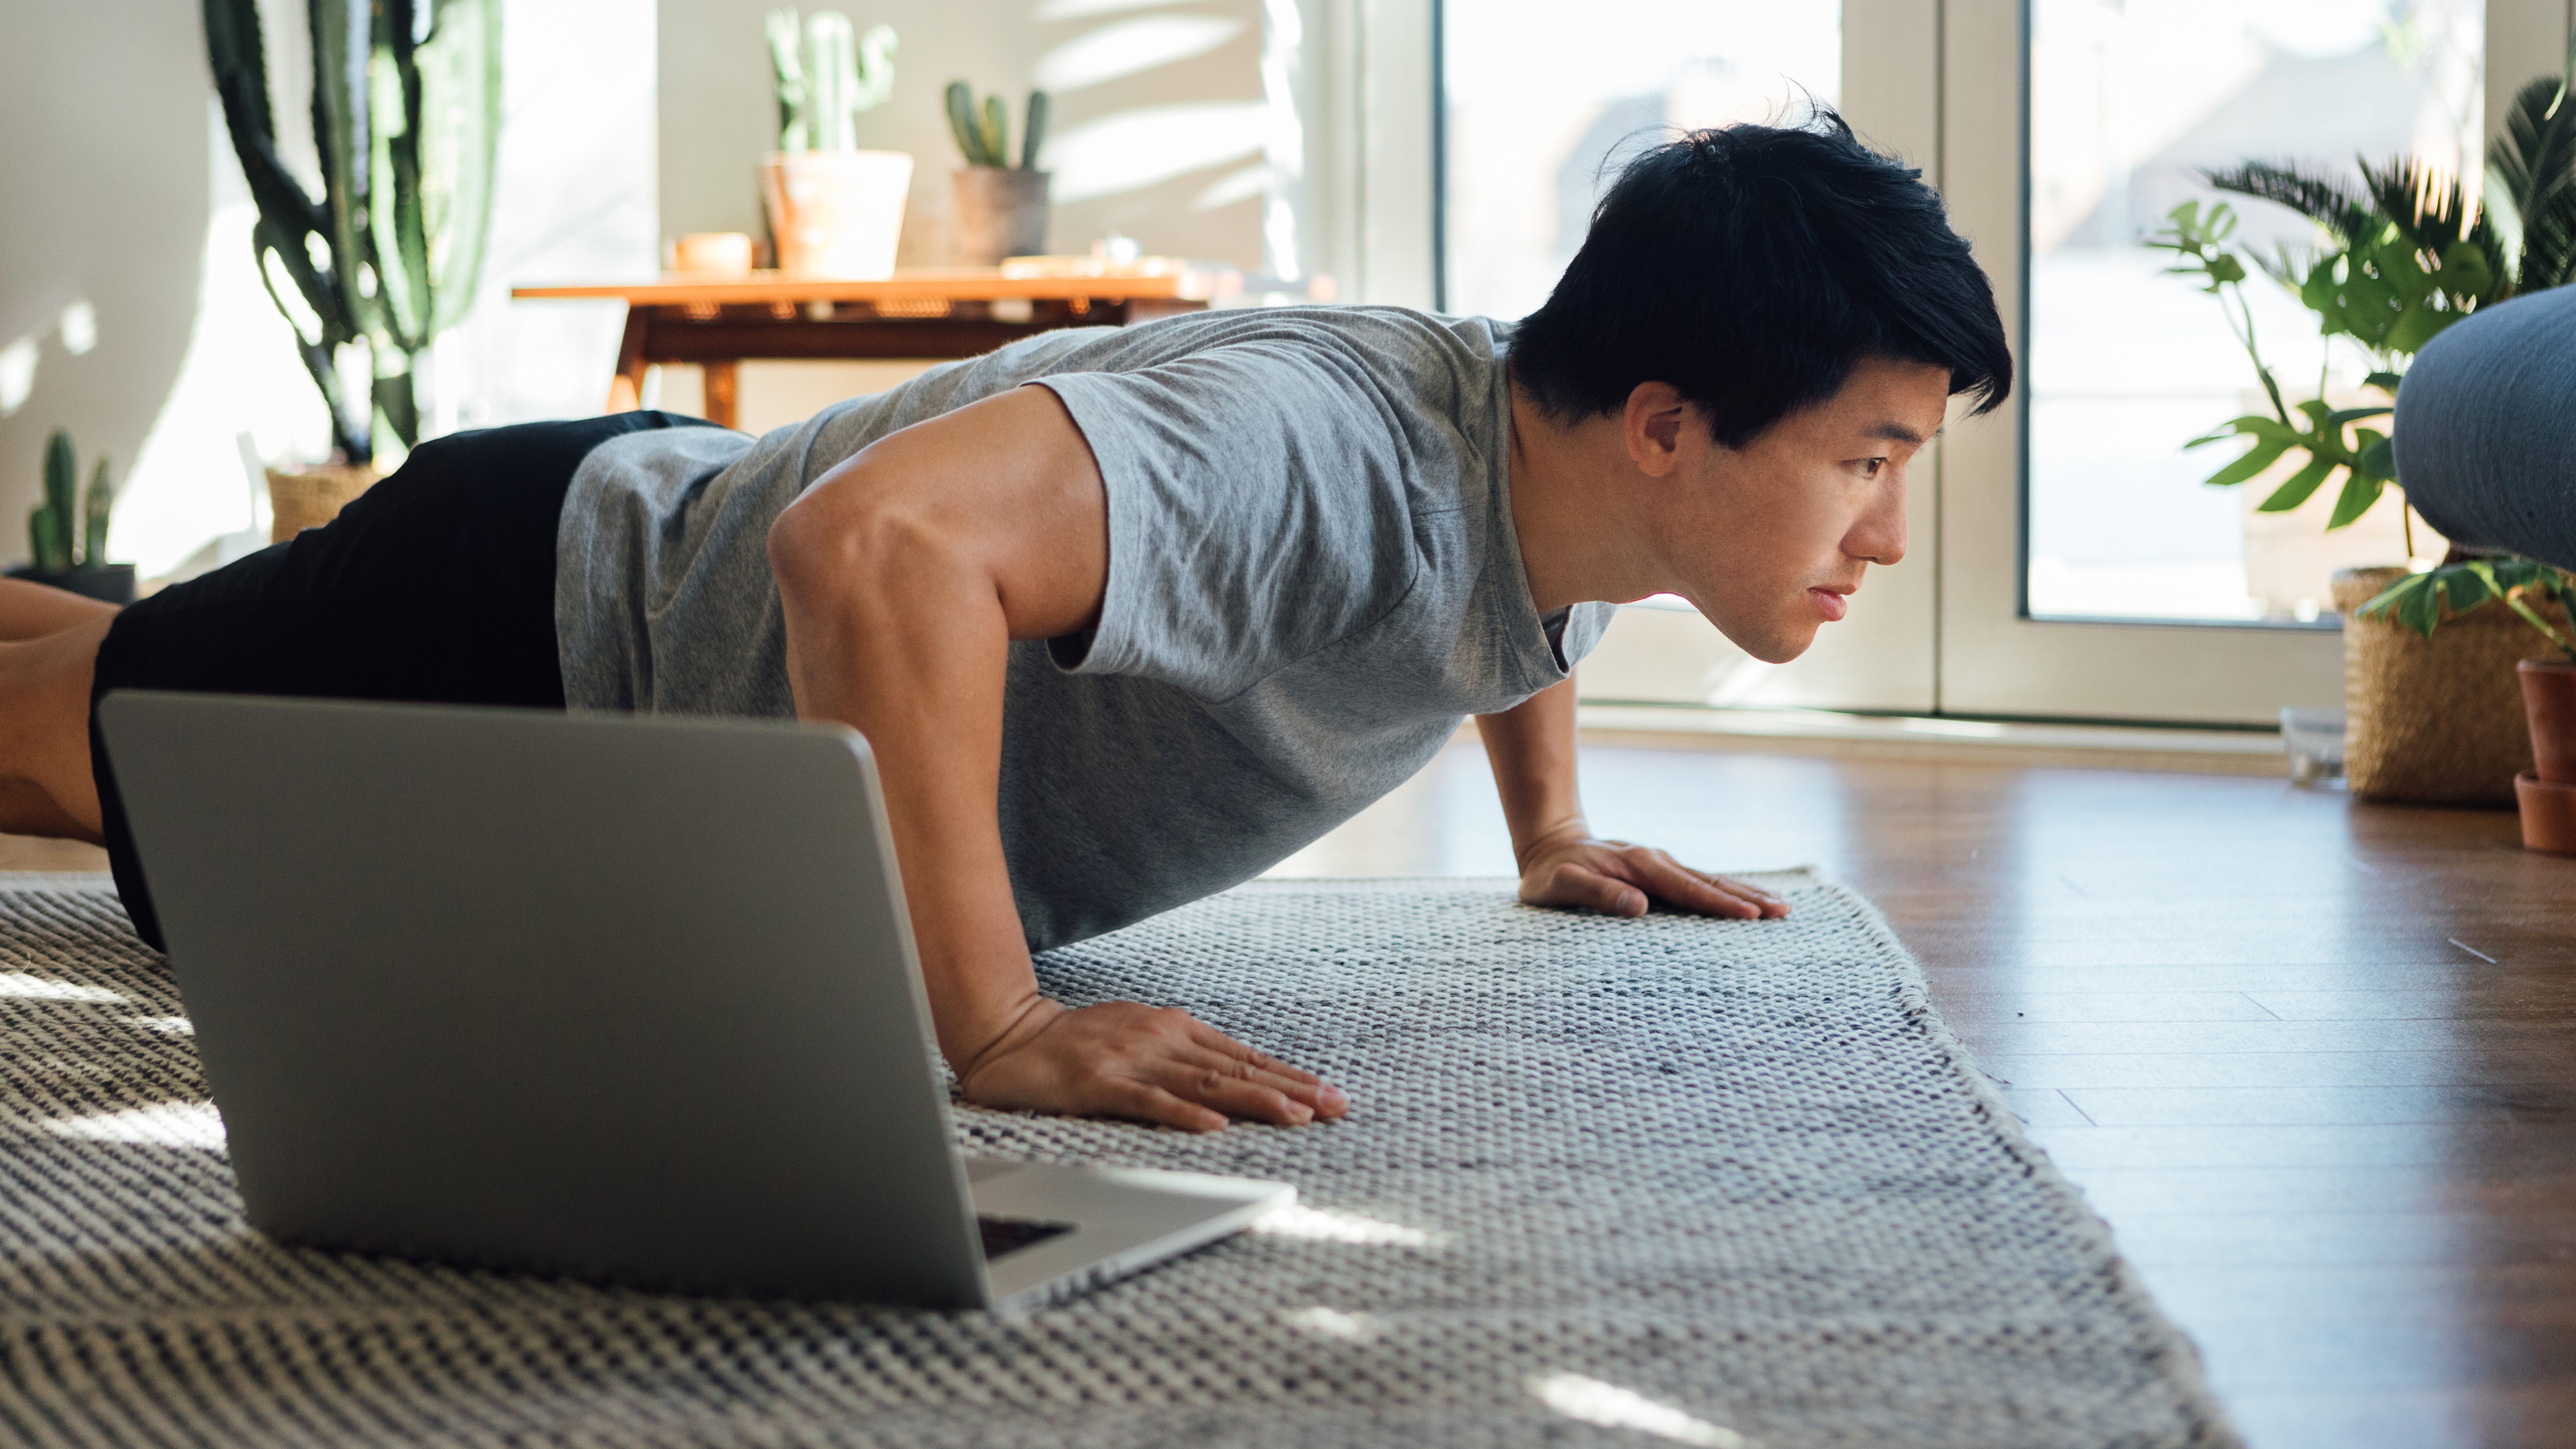 Man doing push-ups next to laptop